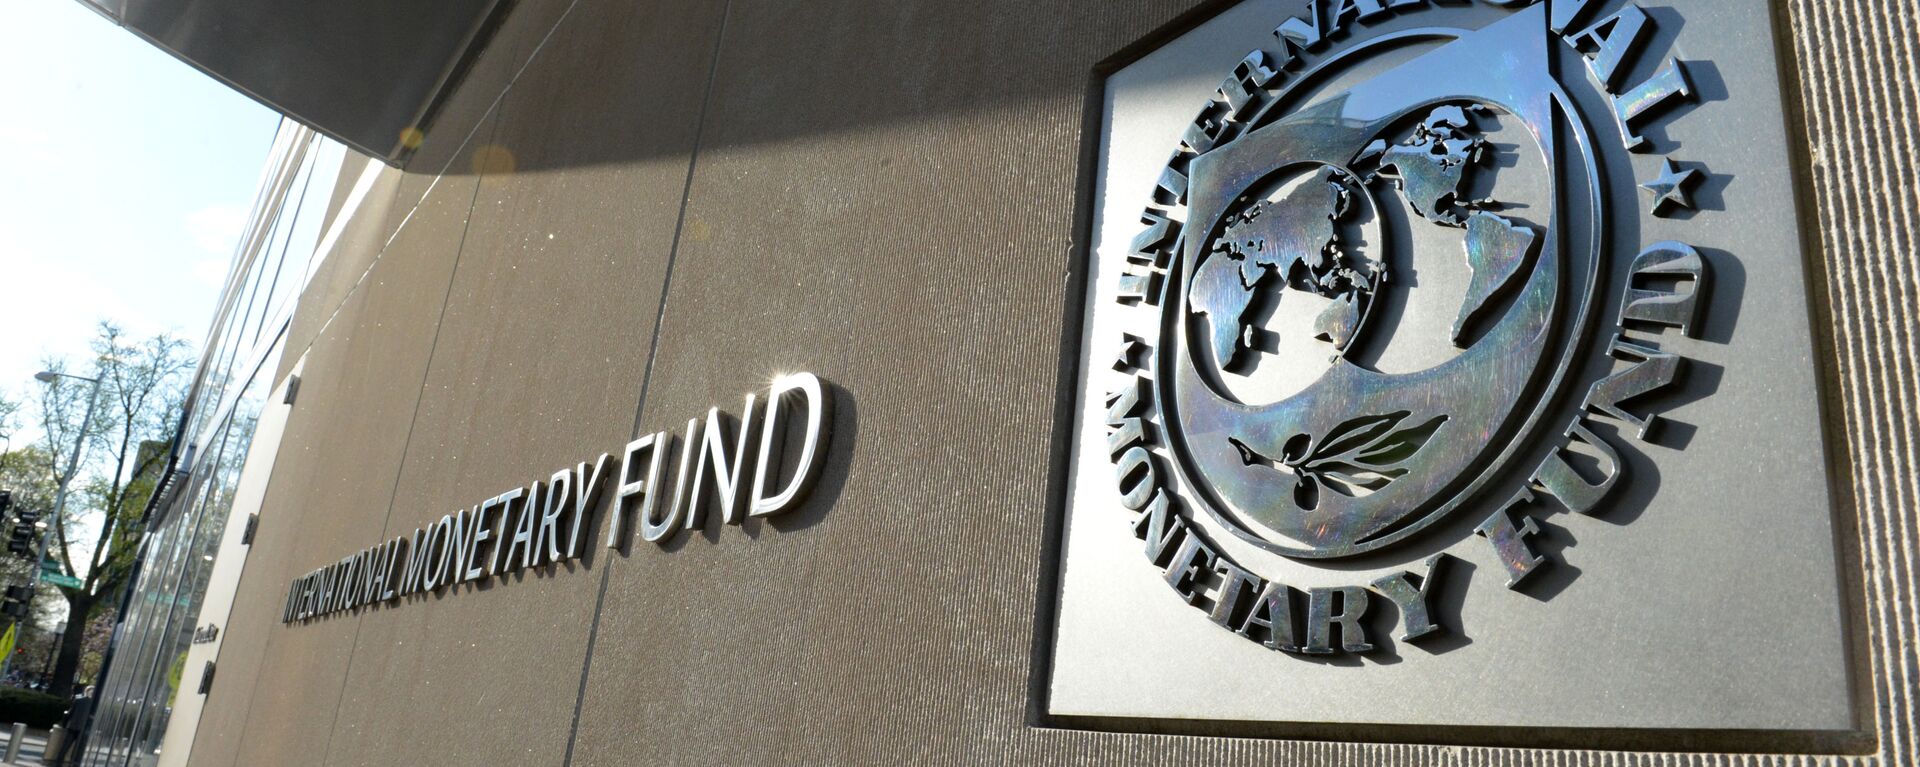 Табличка с логотипом Международного валютного фонда на стене здания МВФ. - Sputnik Արմենիա, 1920, 31.08.2021